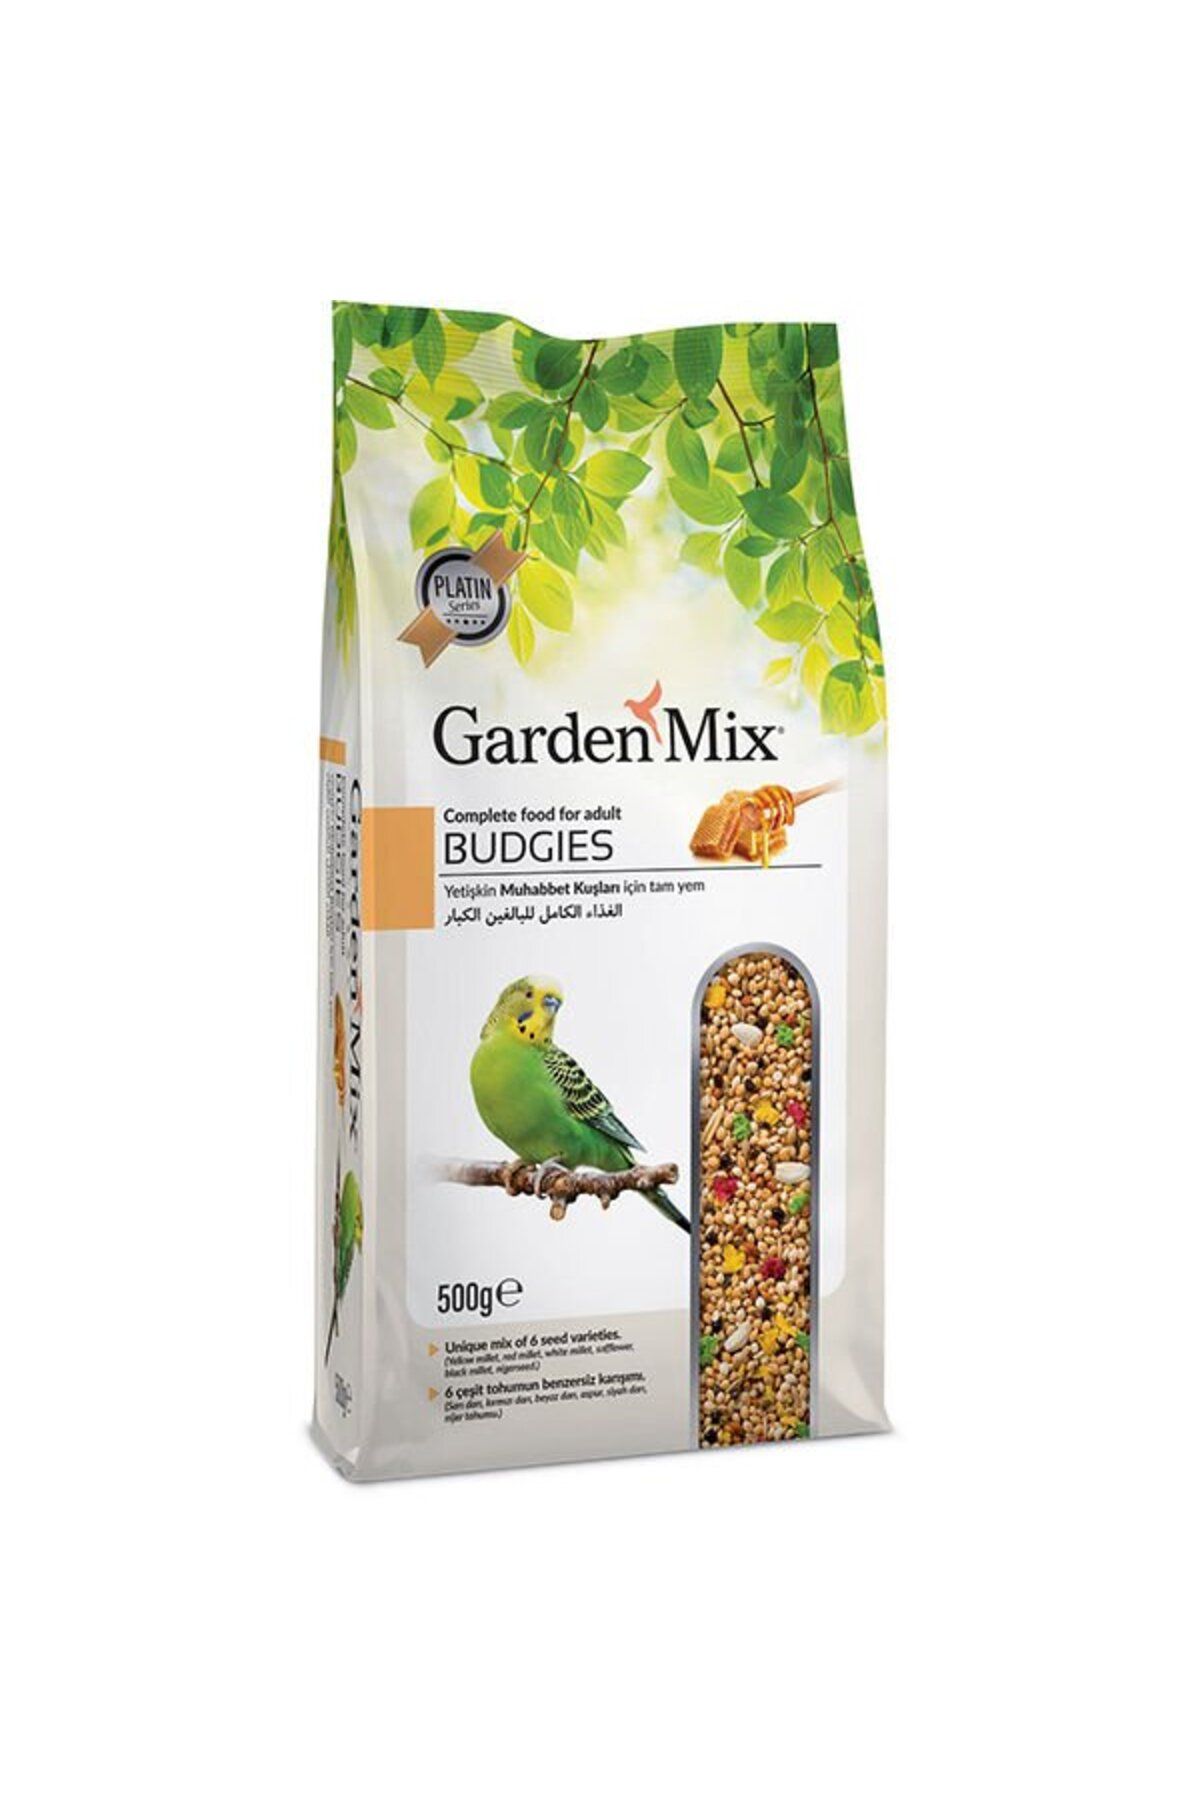 Gardenmix Garden Mix Platin Ballı Muhabbet Kuşu Yemi 500 Gr